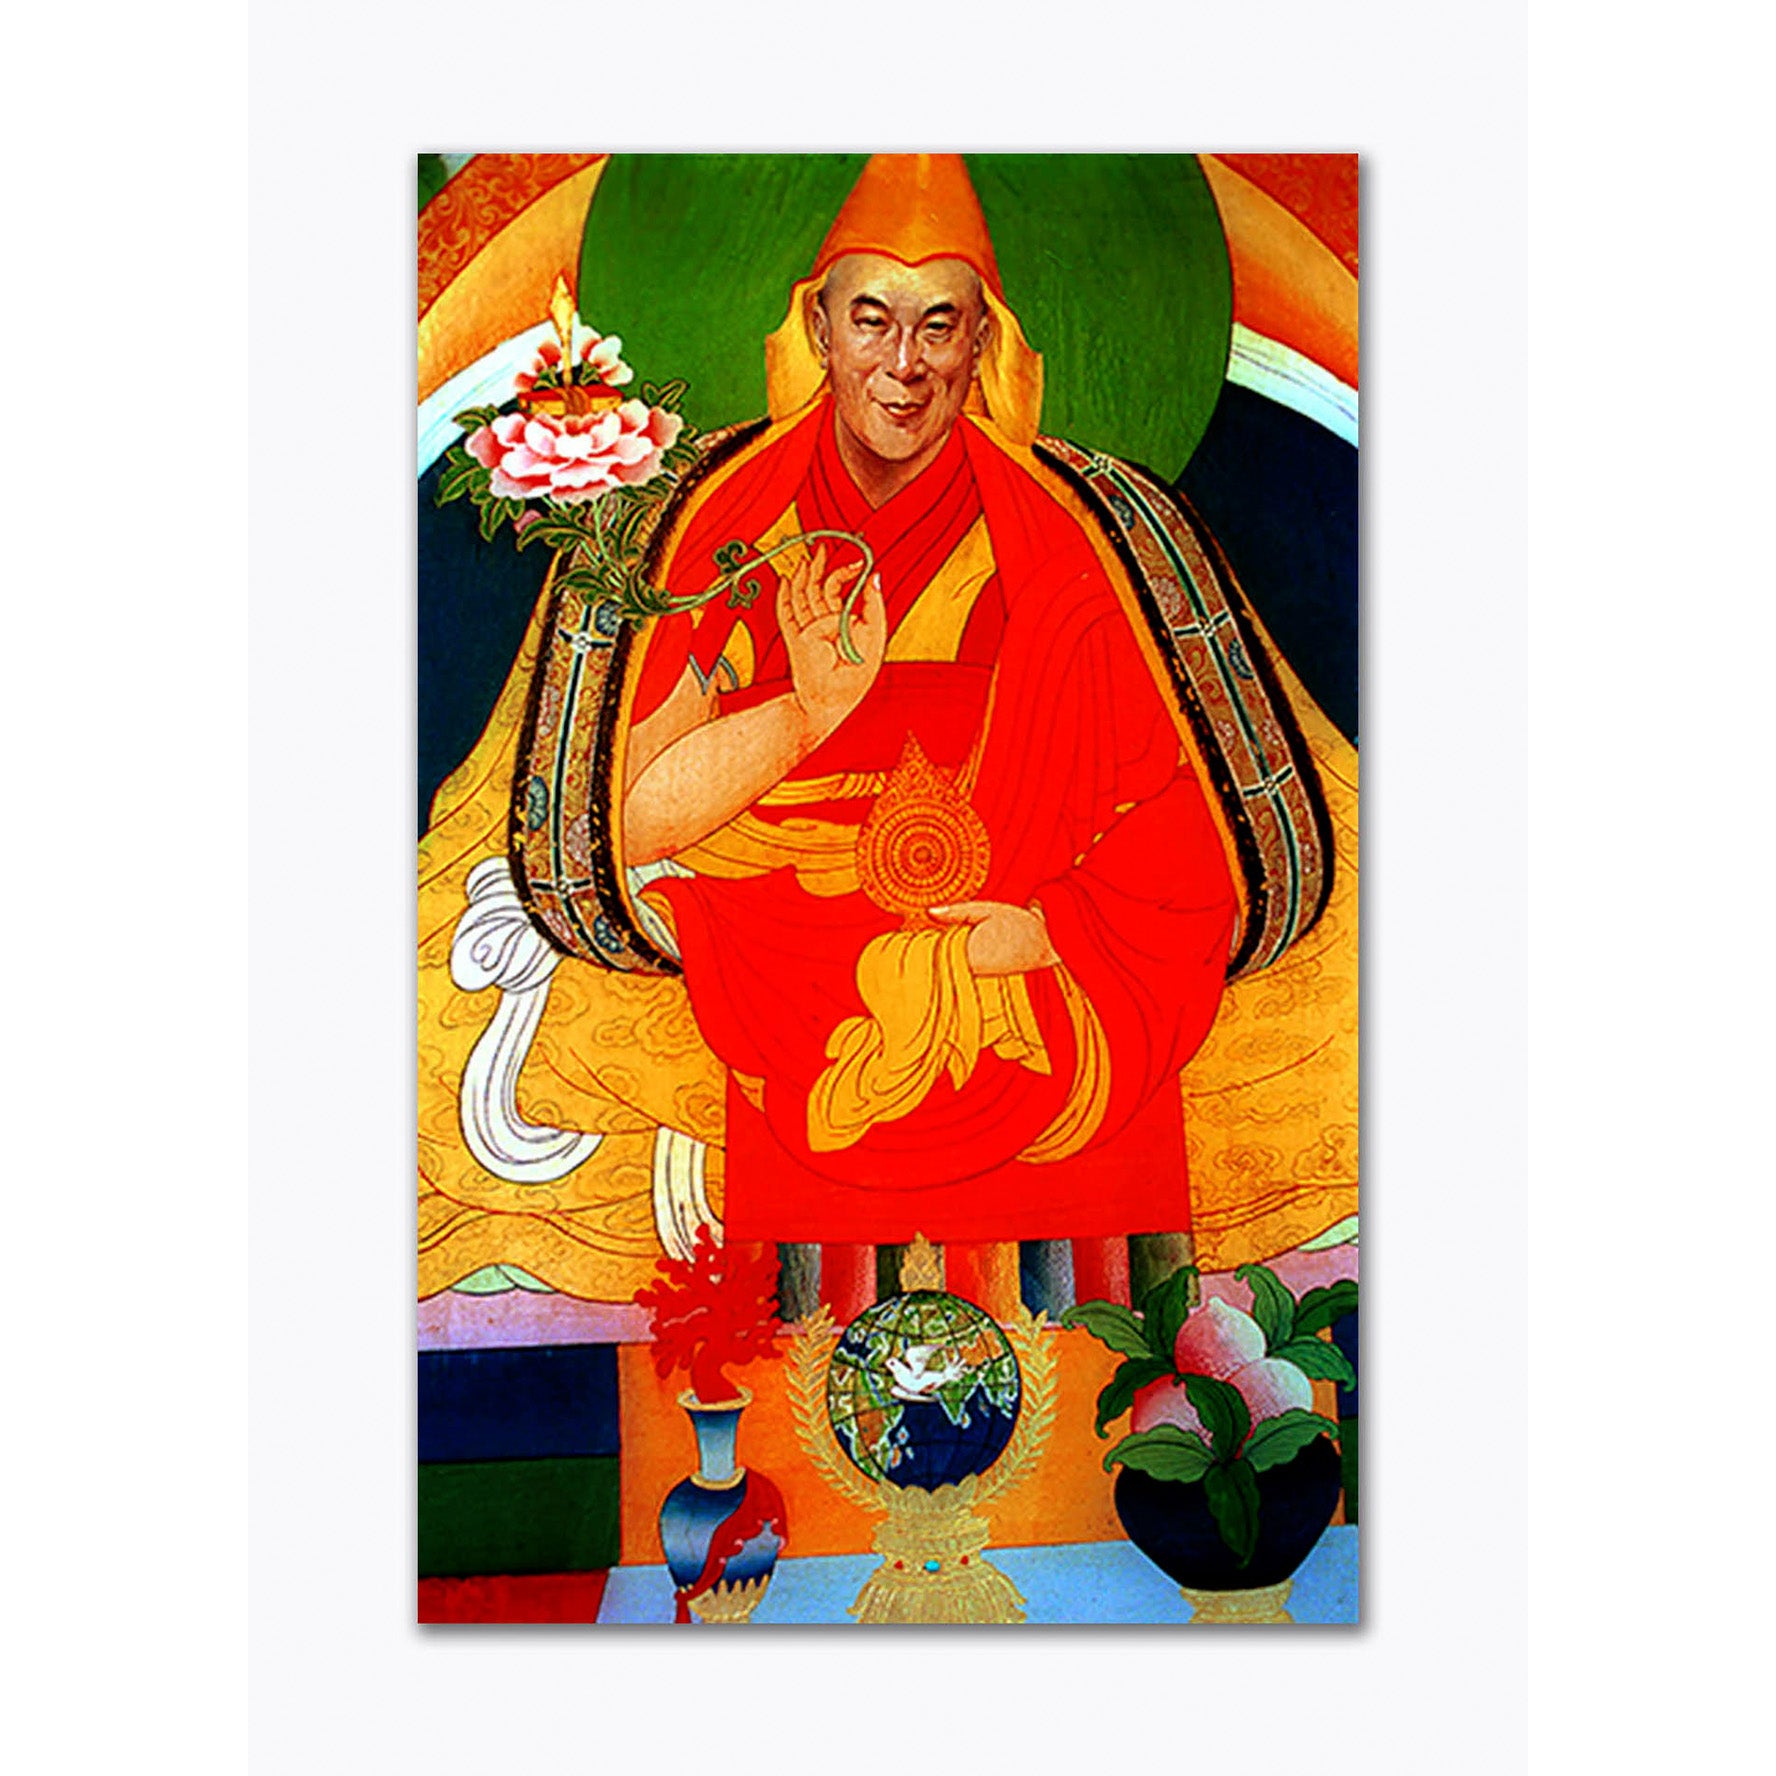 Dorje Shugden with Flower